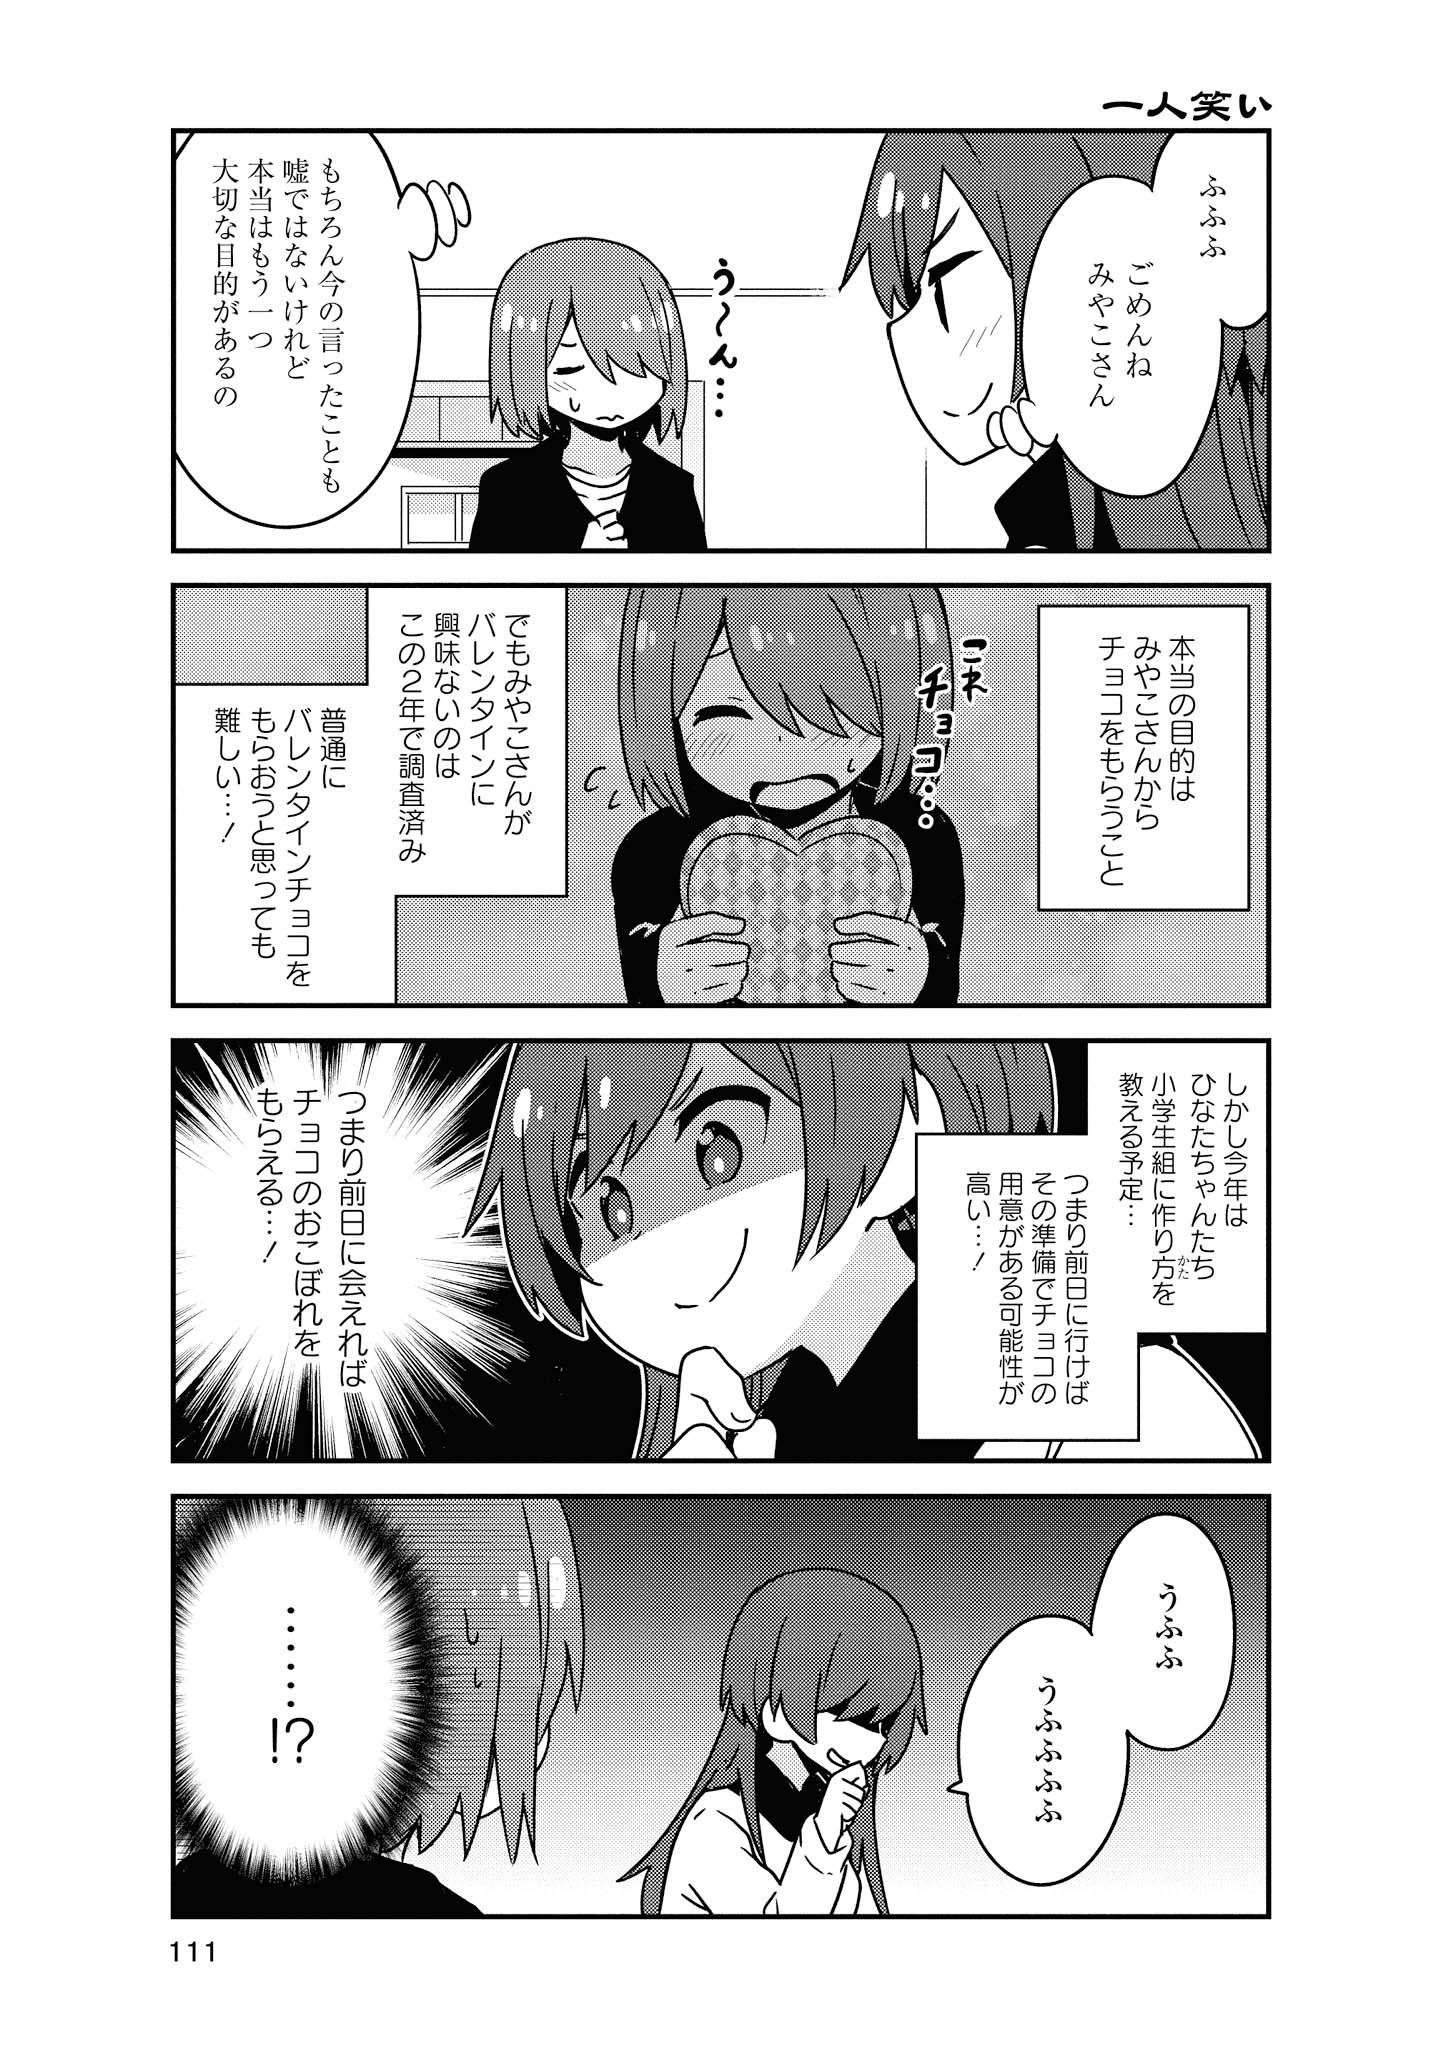 Watashi ni Tenshi ga Maiorita! - Chapter 50 - Page 5